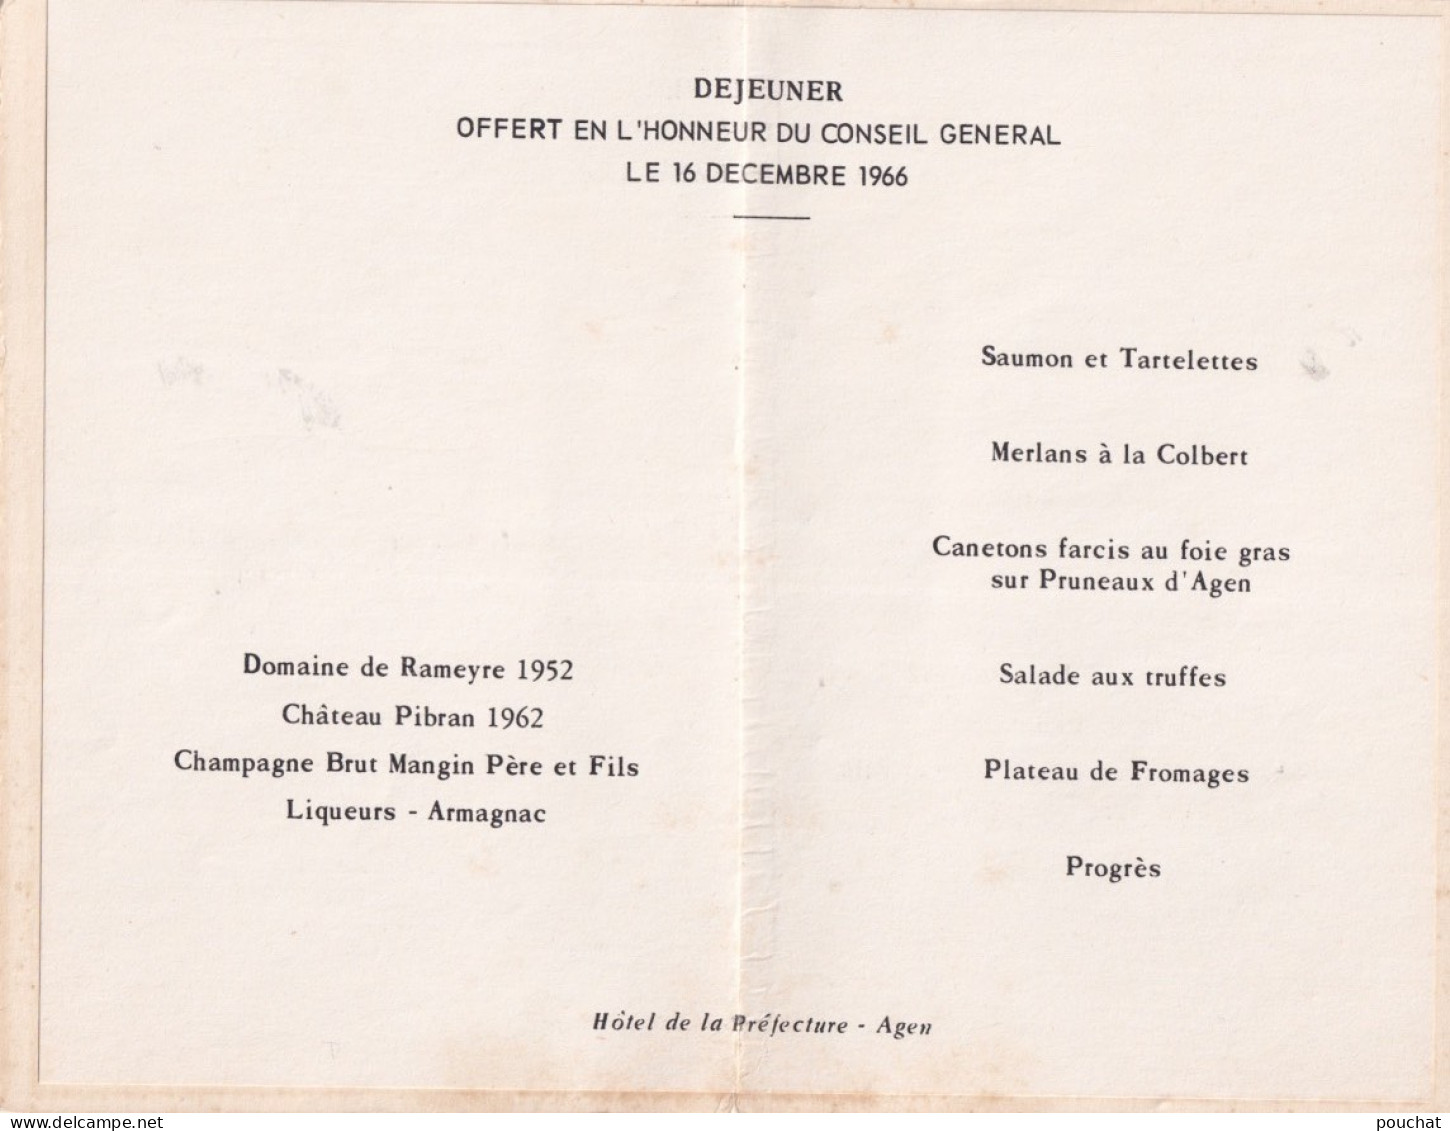 AGEN - GRAVURE HOTEL DE LA PREFECTURE - MENU - DEJEUNER OFFERT EN L ' HONNEUR DU CONSEIL GENERAL LE 16/12/1966 - 3 SCANS - Menus